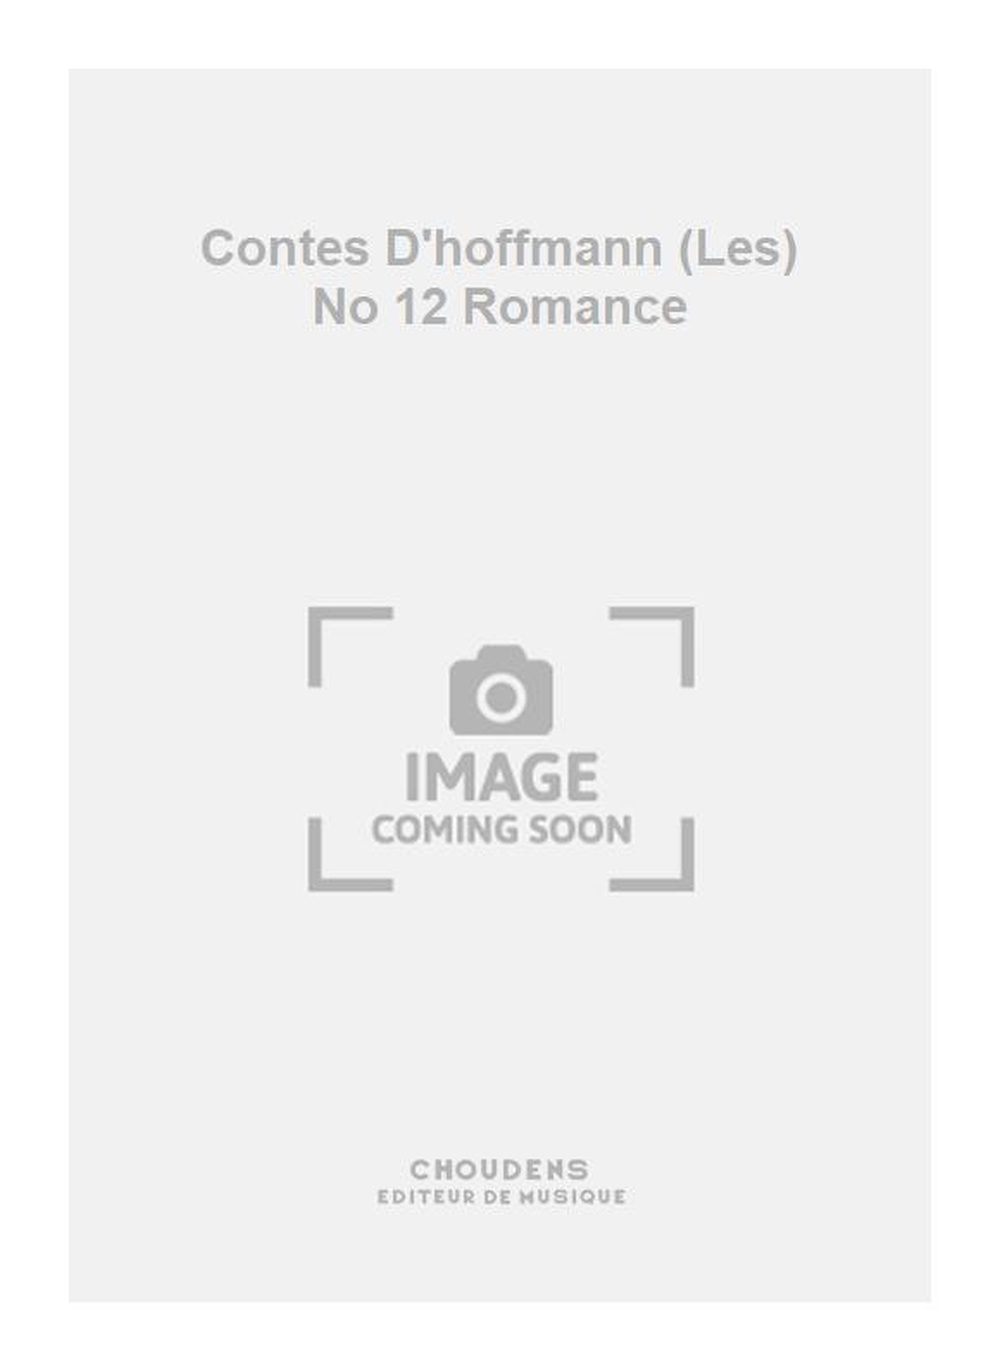 Jacques Offenbach: Contes D'hoffmann (Les) No 12 Romance